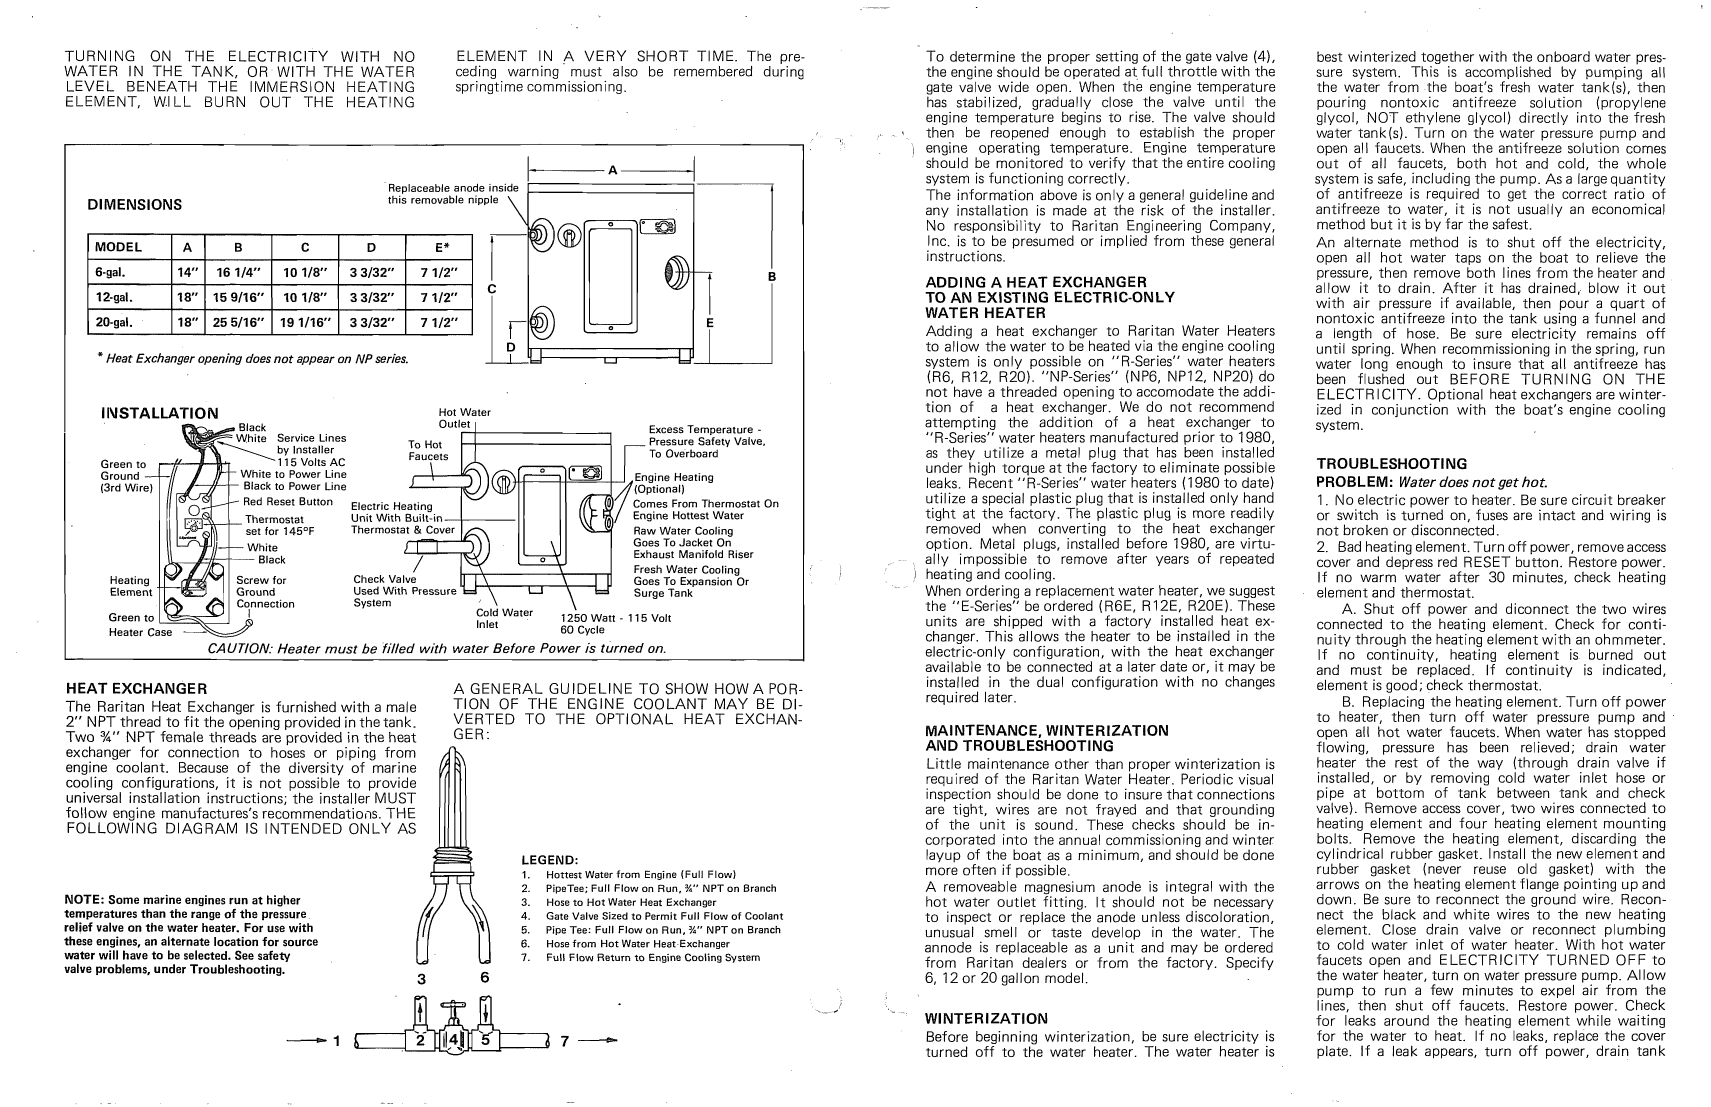   Raritan  Electric Water Heater manual page 3